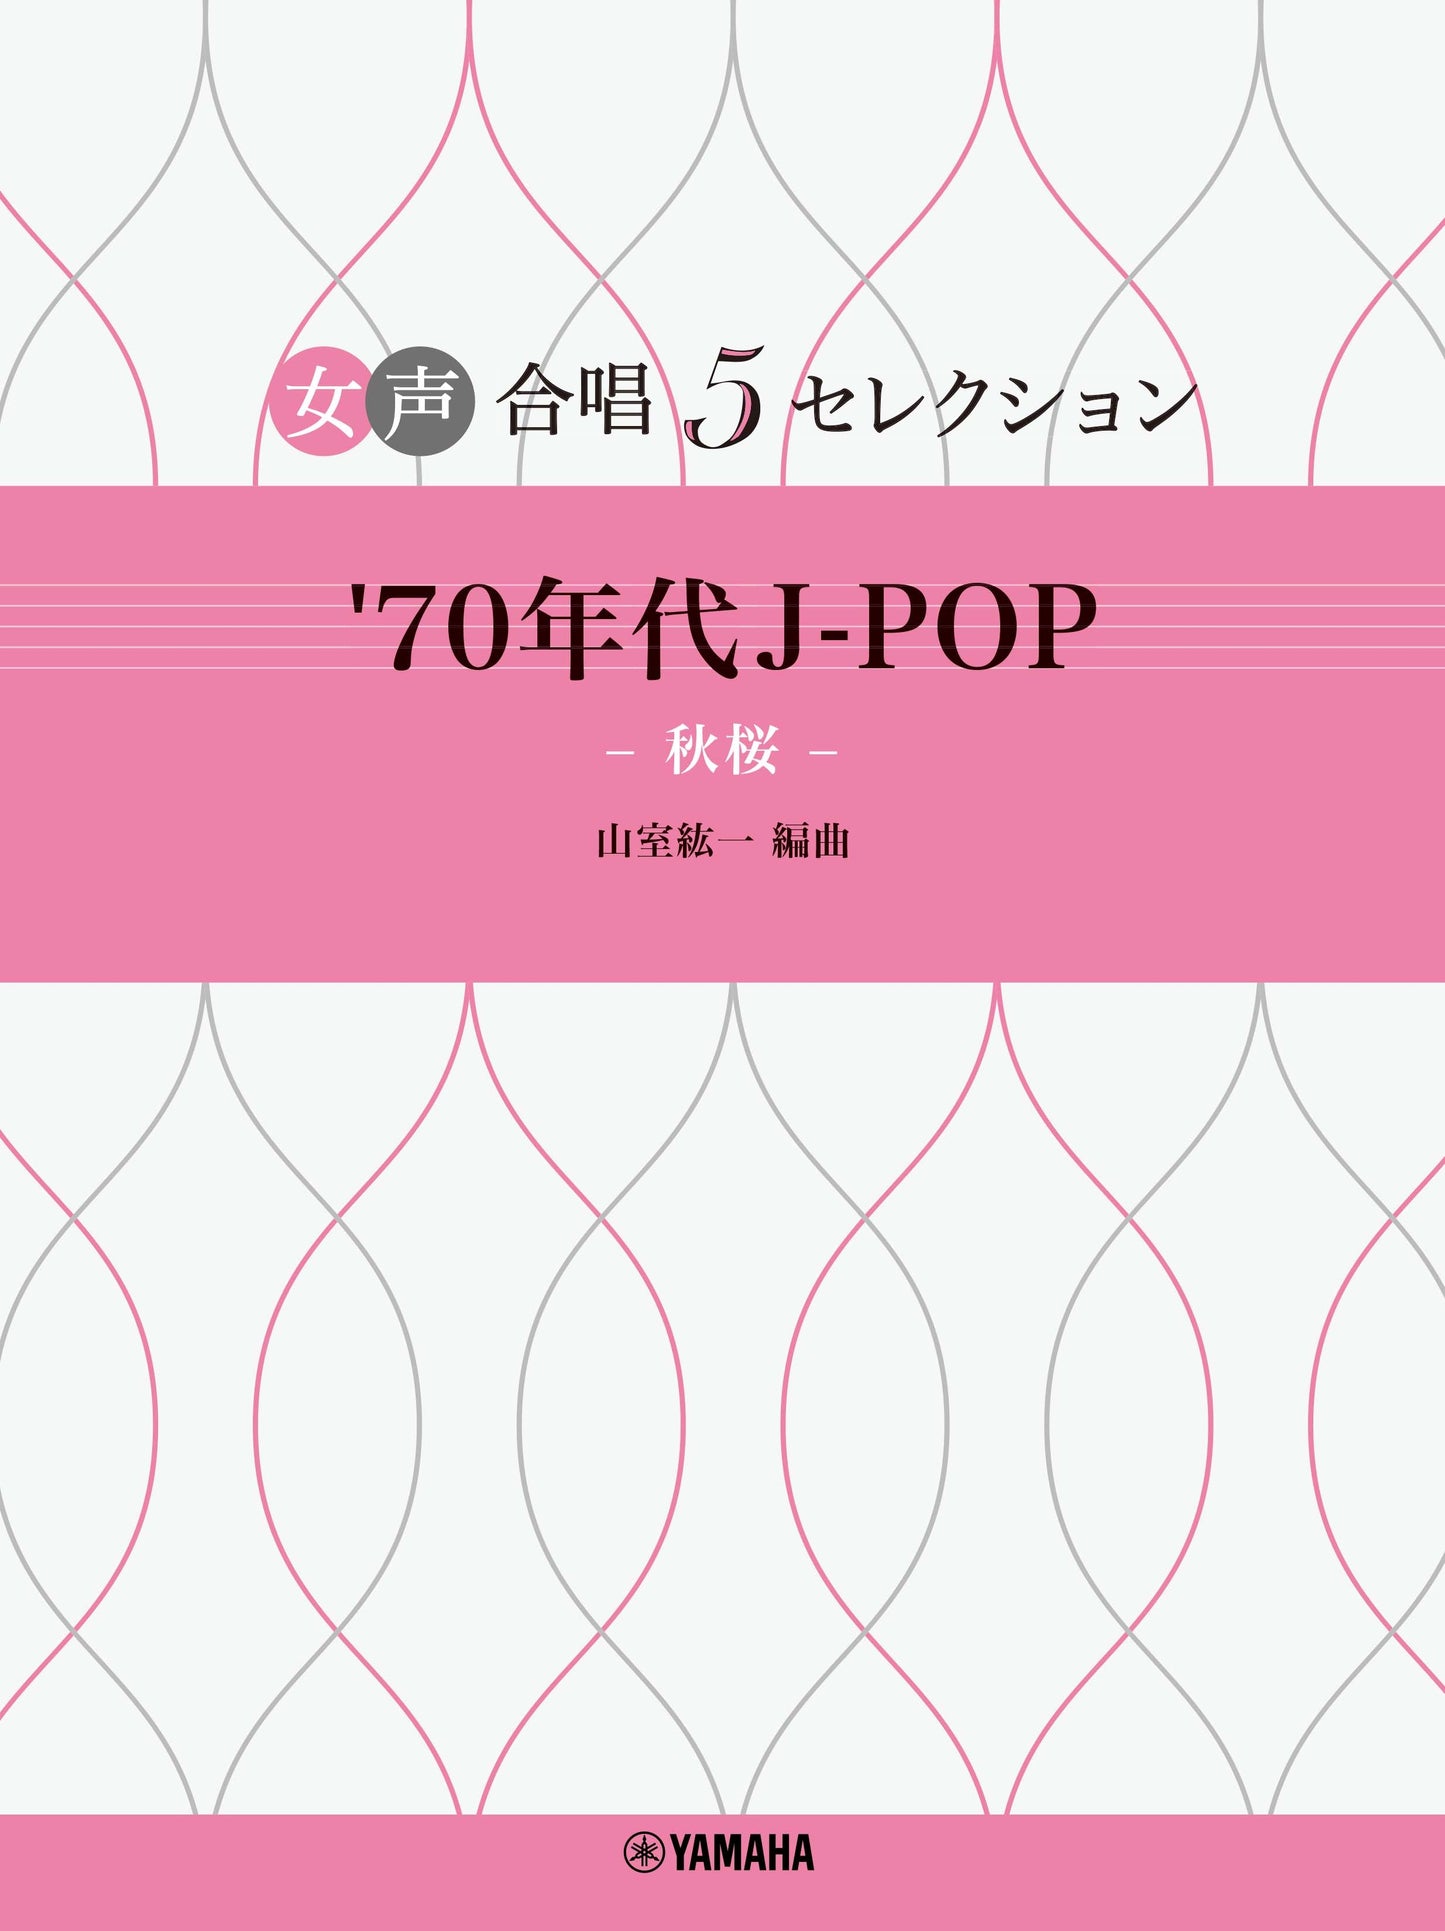 女声合唱 女声合唱 5セレクション '70年代 J-POP～秋桜 編曲:山室紘一